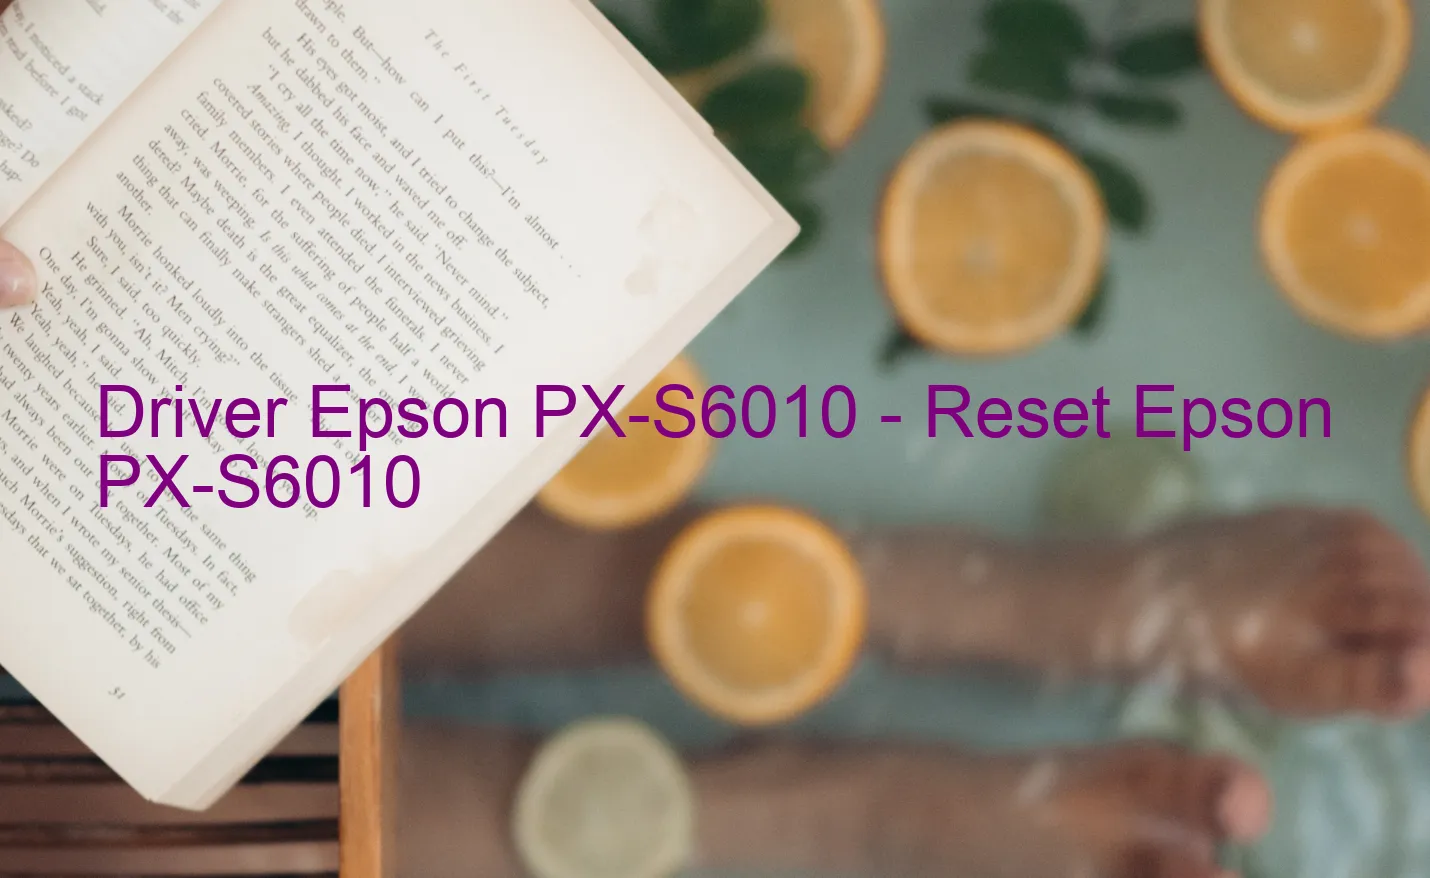 Epson PX-S6010のドライバー、Epson PX-S6010のリセットソフトウェア